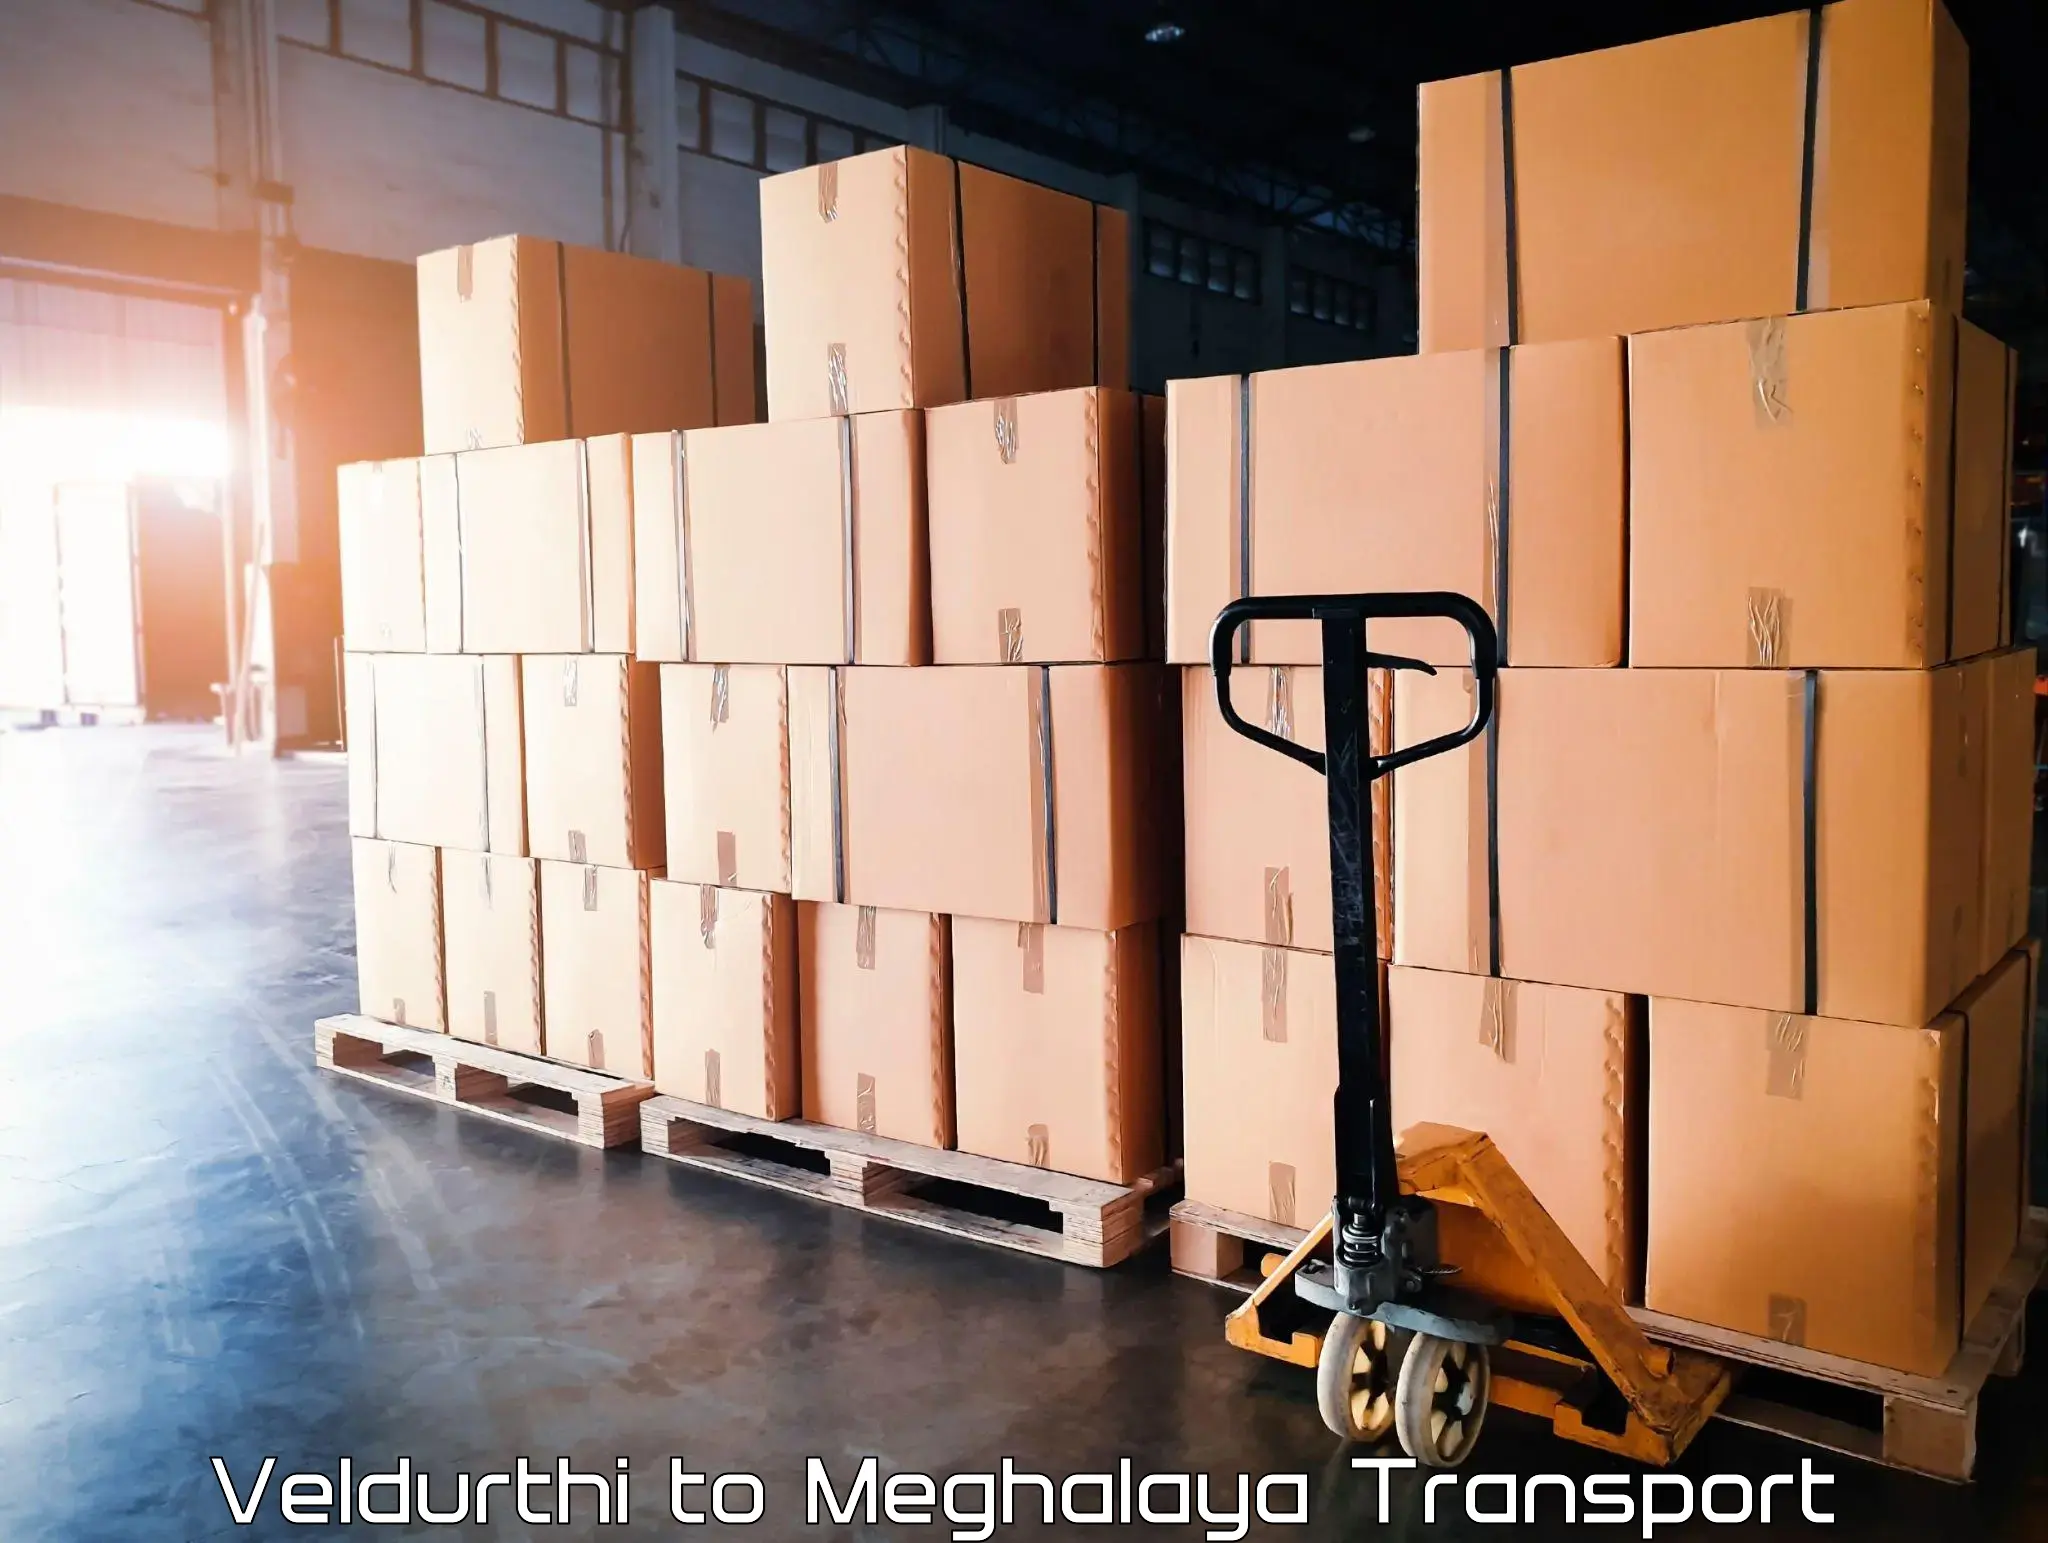 Daily transport service Veldurthi to Meghalaya